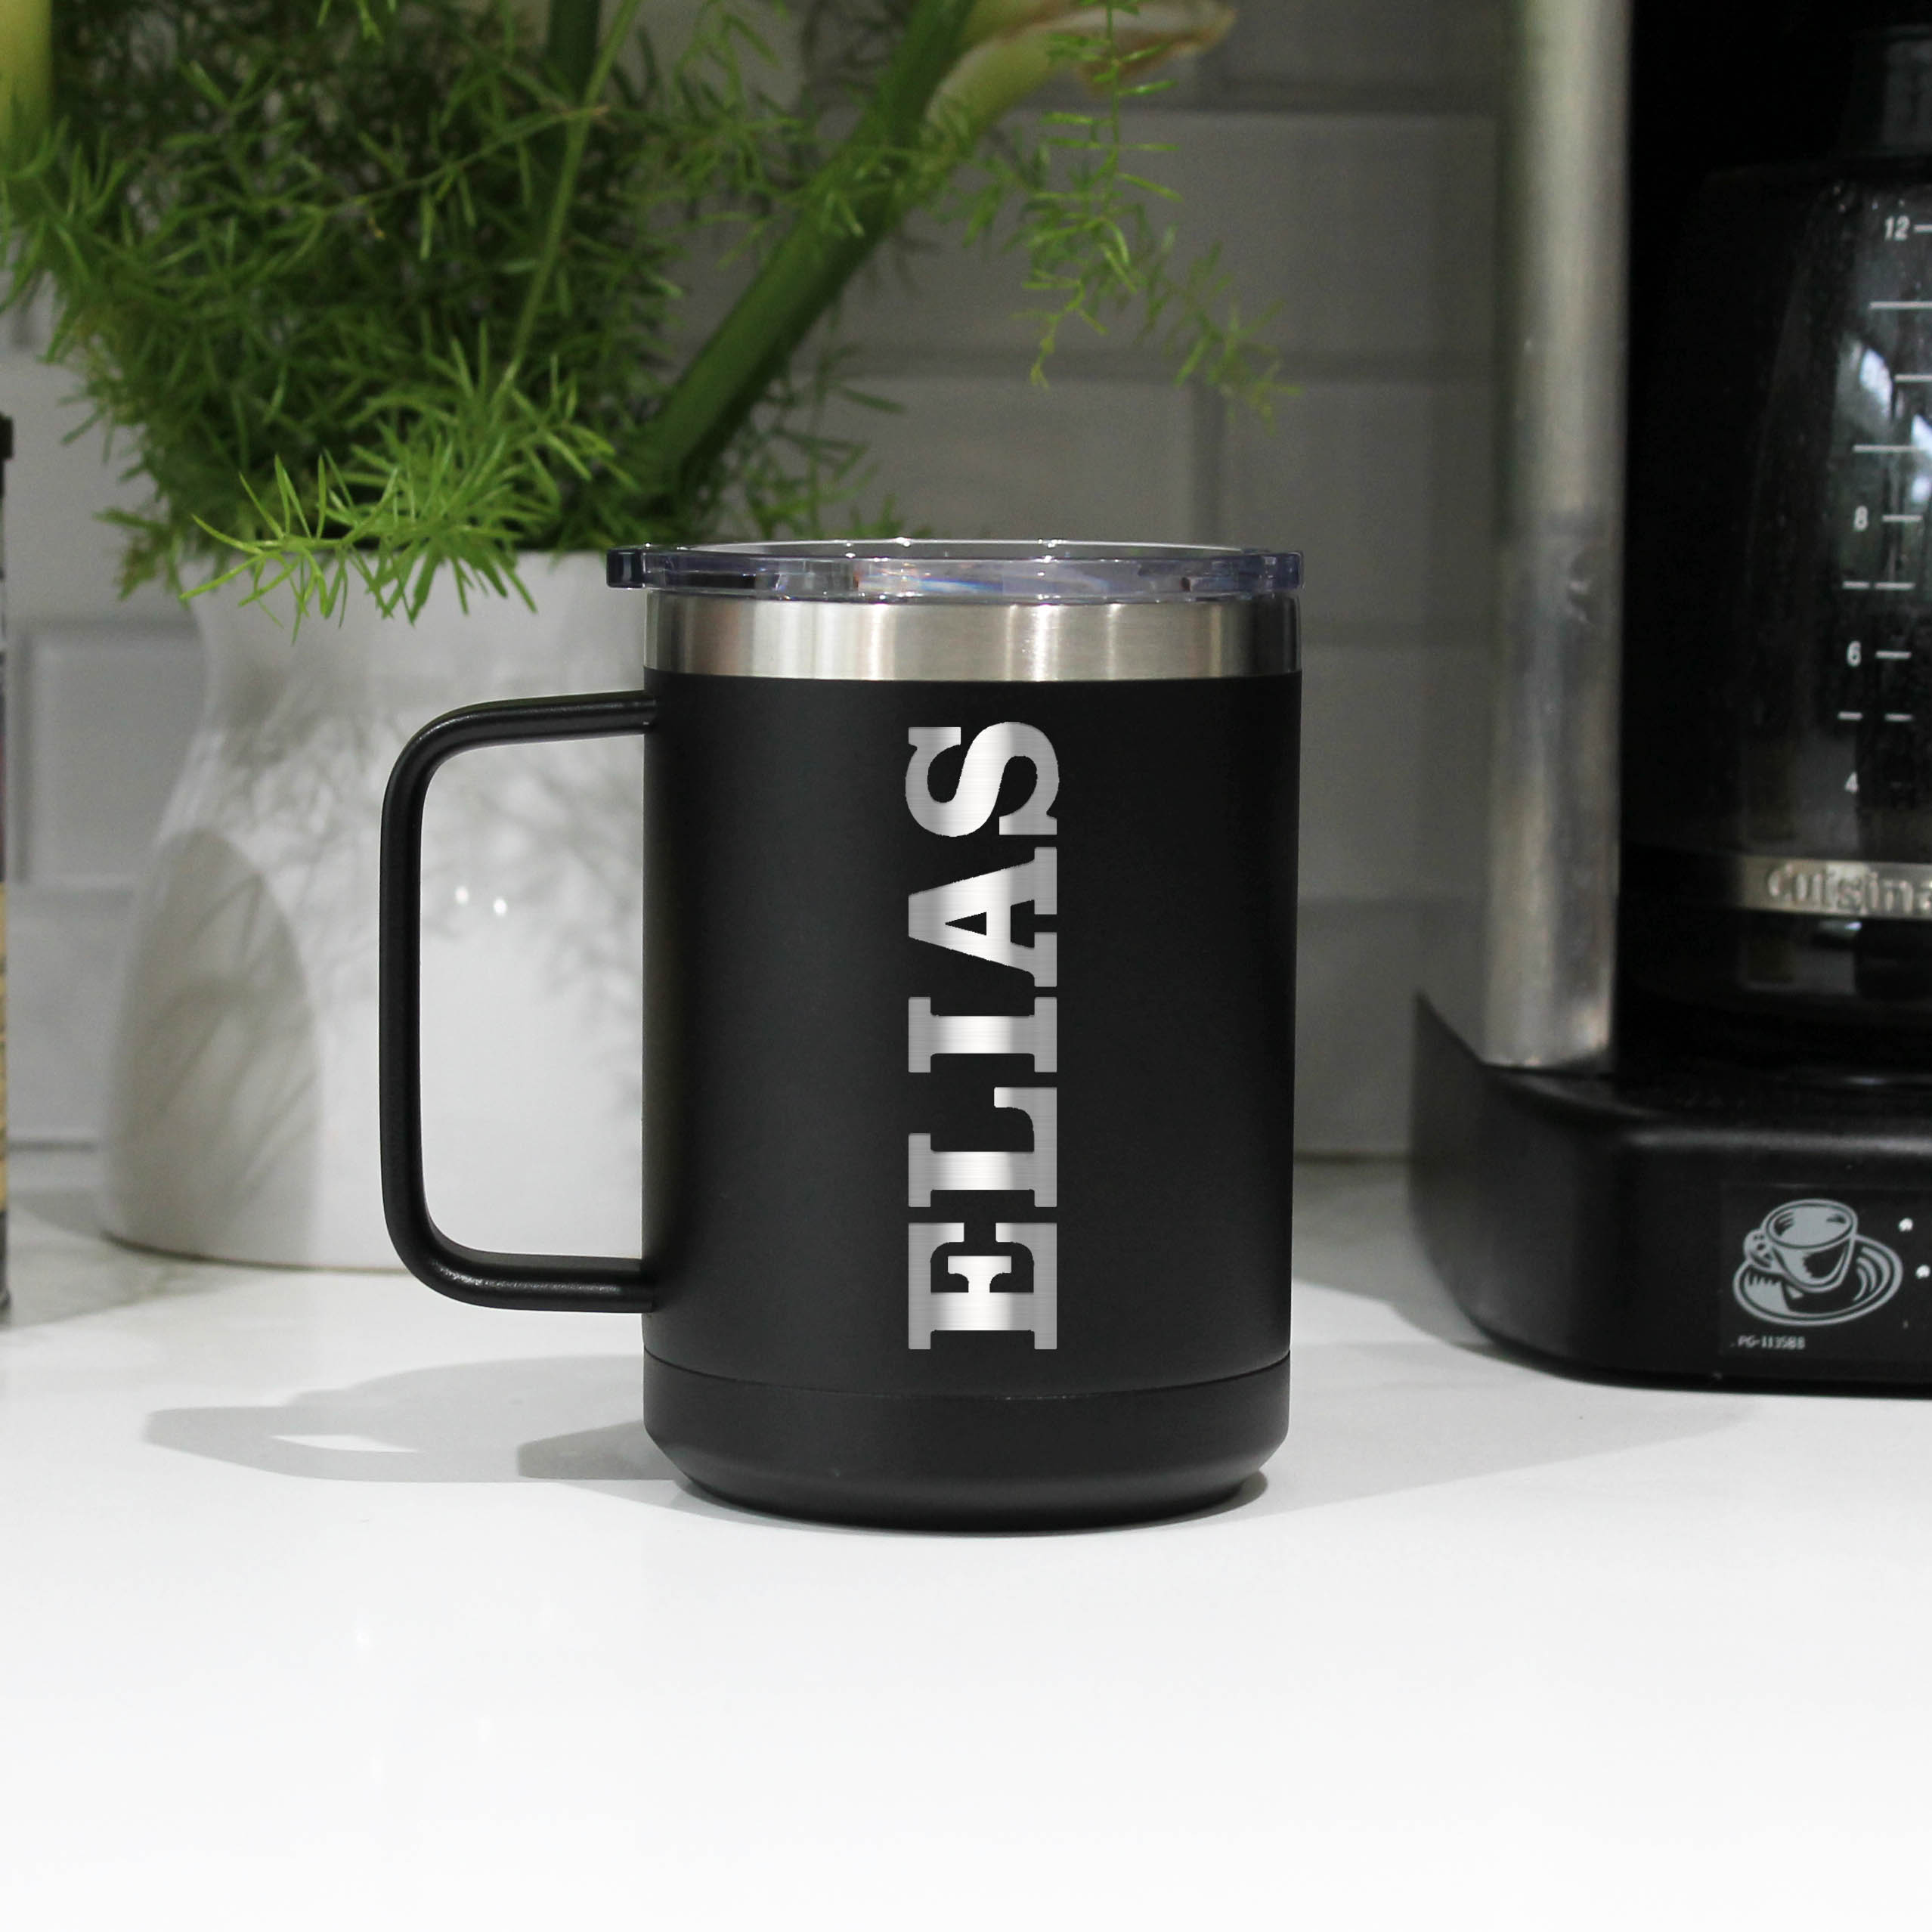 Stainless Steel Coffee Mugs: Metal Mugs & Cups